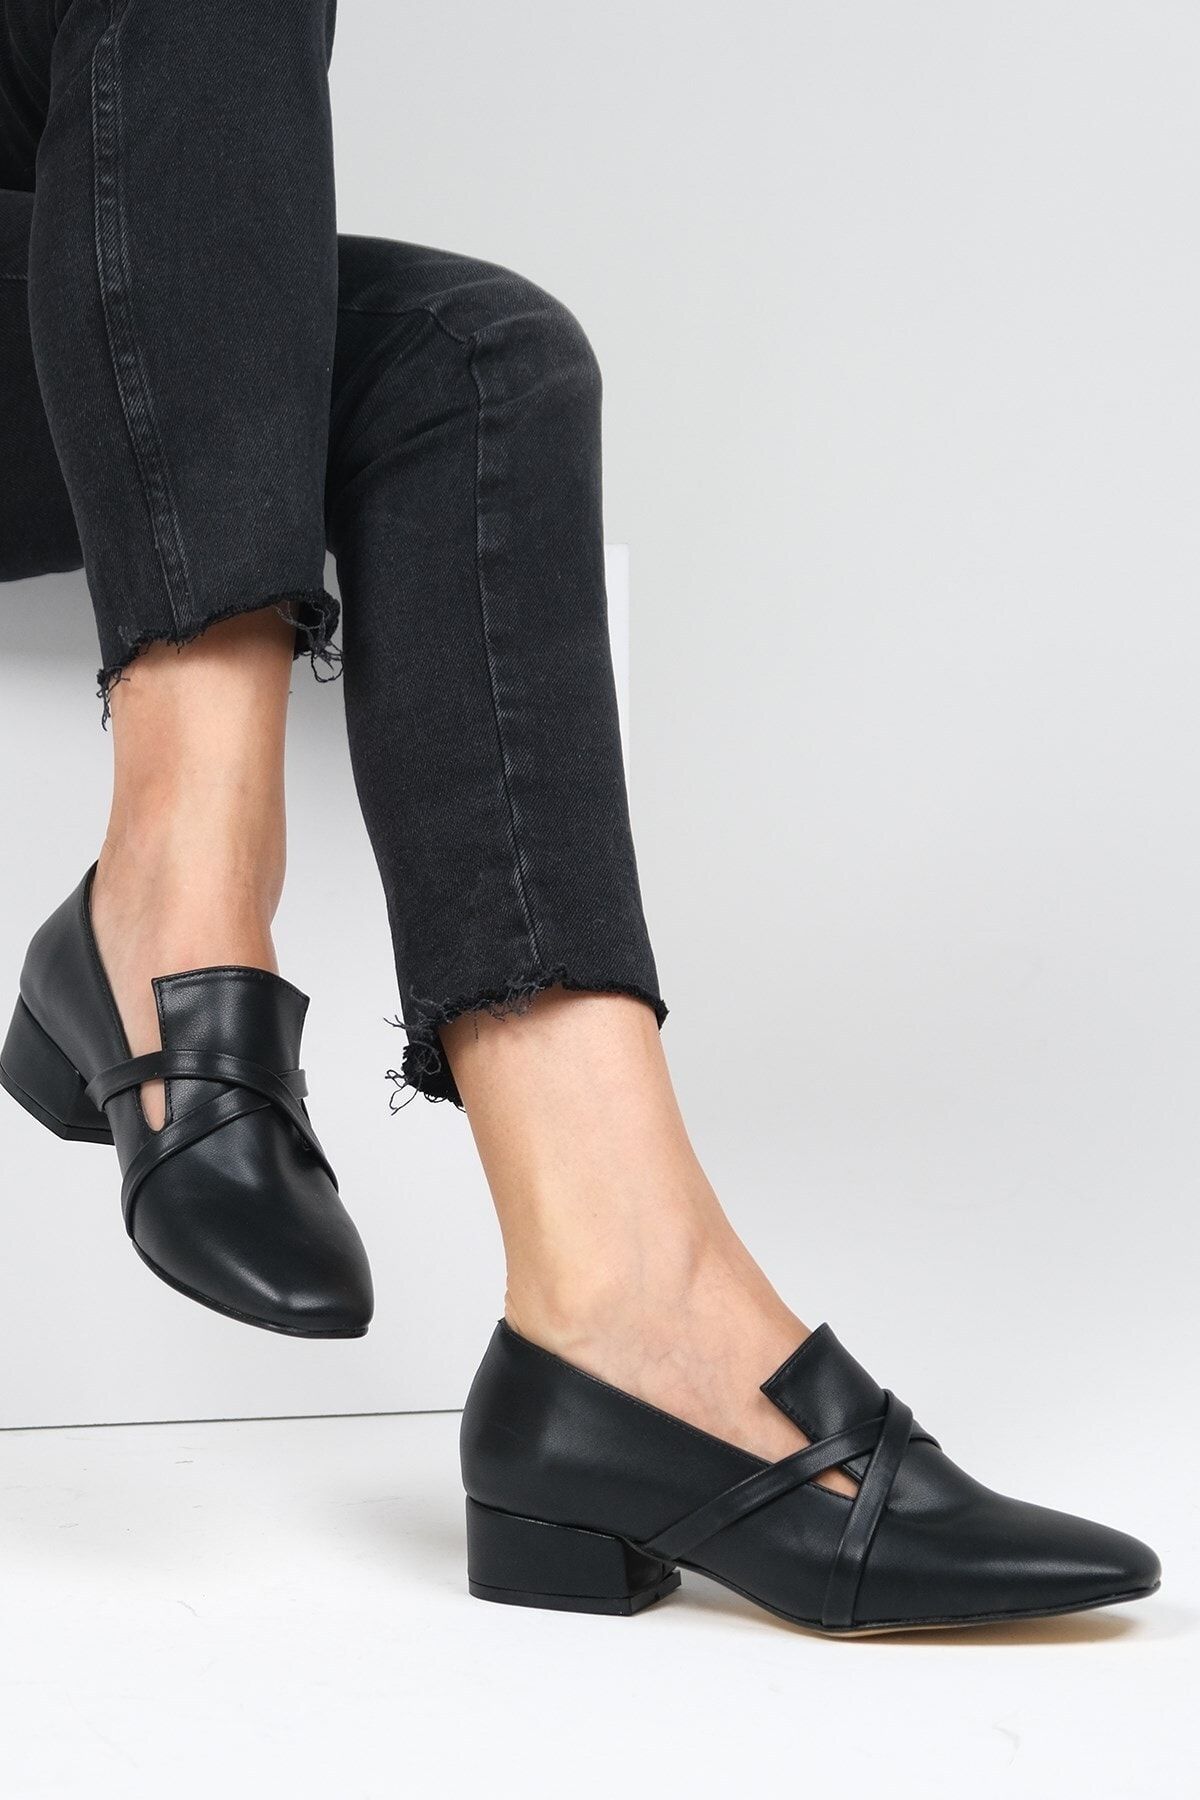 Mio Gusto Doris Siyah Renk Çapraz Bantlı Kadın Kısa Topuklu Ayakkabı